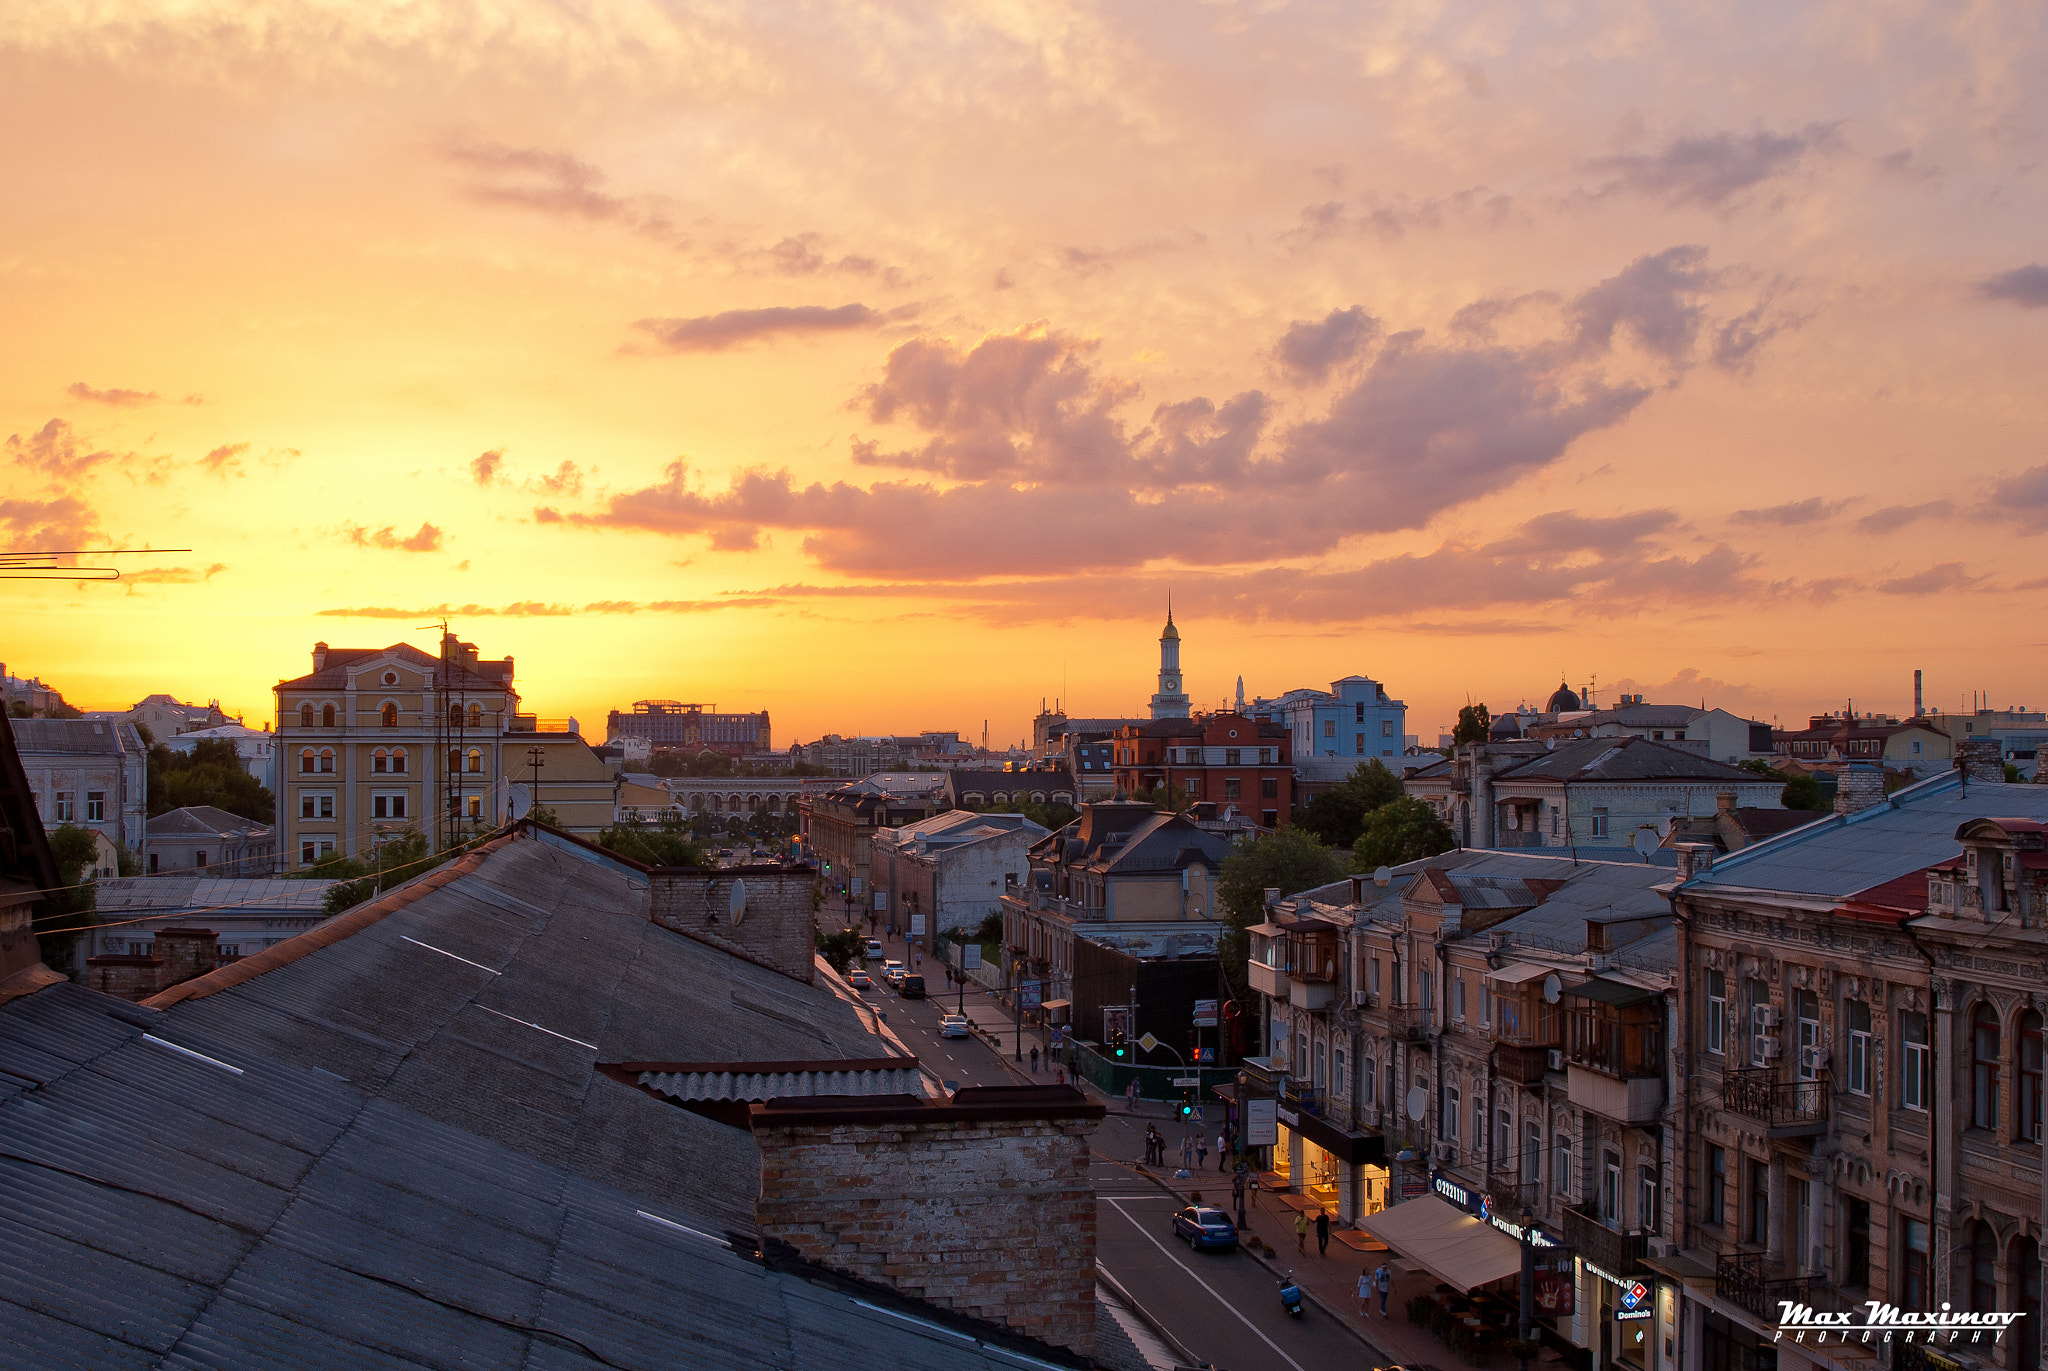 Nikon D200 + AF Zoom-Nikkor 24-120mm f/3.5-5.6D IF sample photo. Sunset over podil district, kiev, ukraine photography